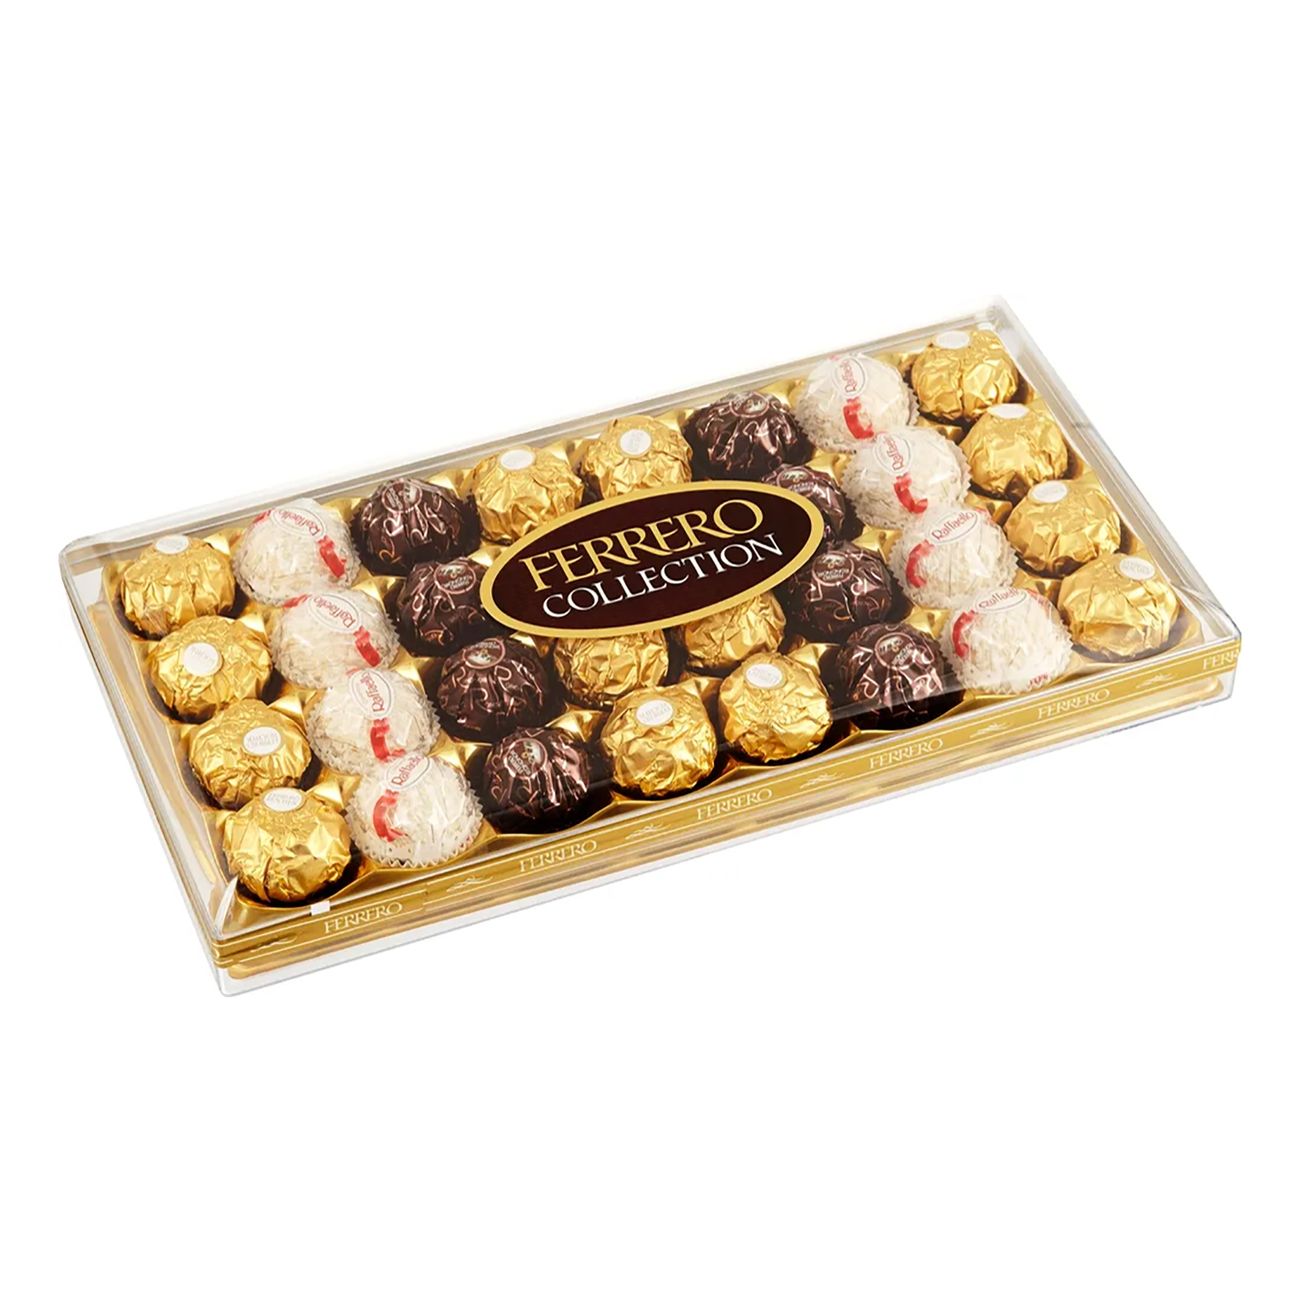 partykungen.se | Ferrero Collection Praliner Chokladask